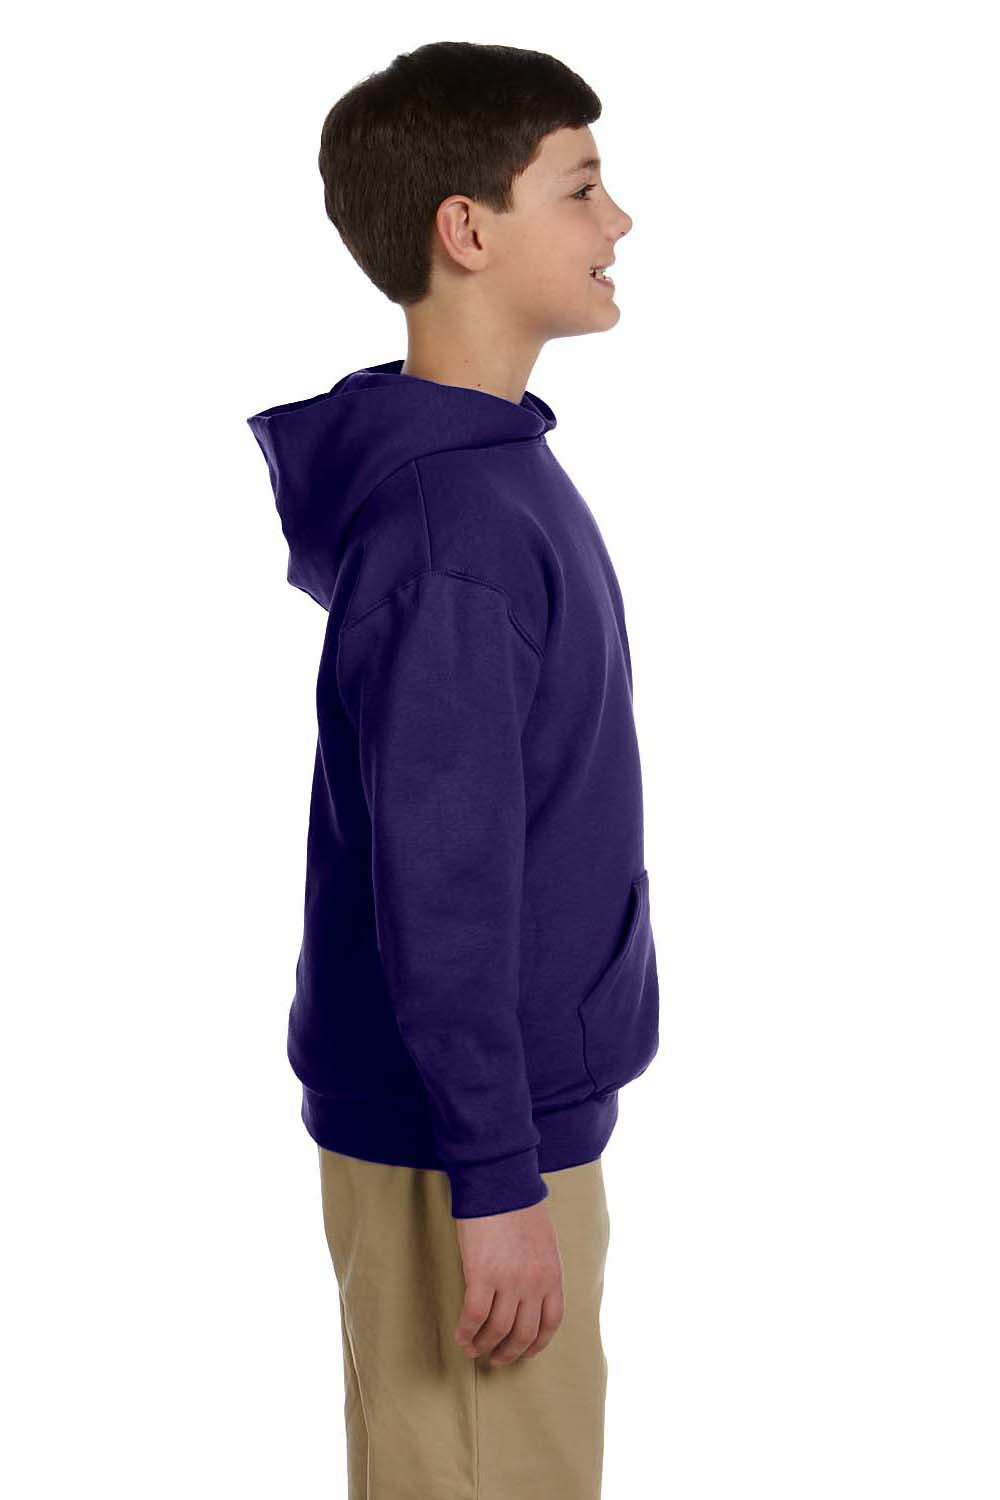 Jerzees 996Y Youth NuBlend Fleece Hooded Sweatshirt Hoodie Purple Side